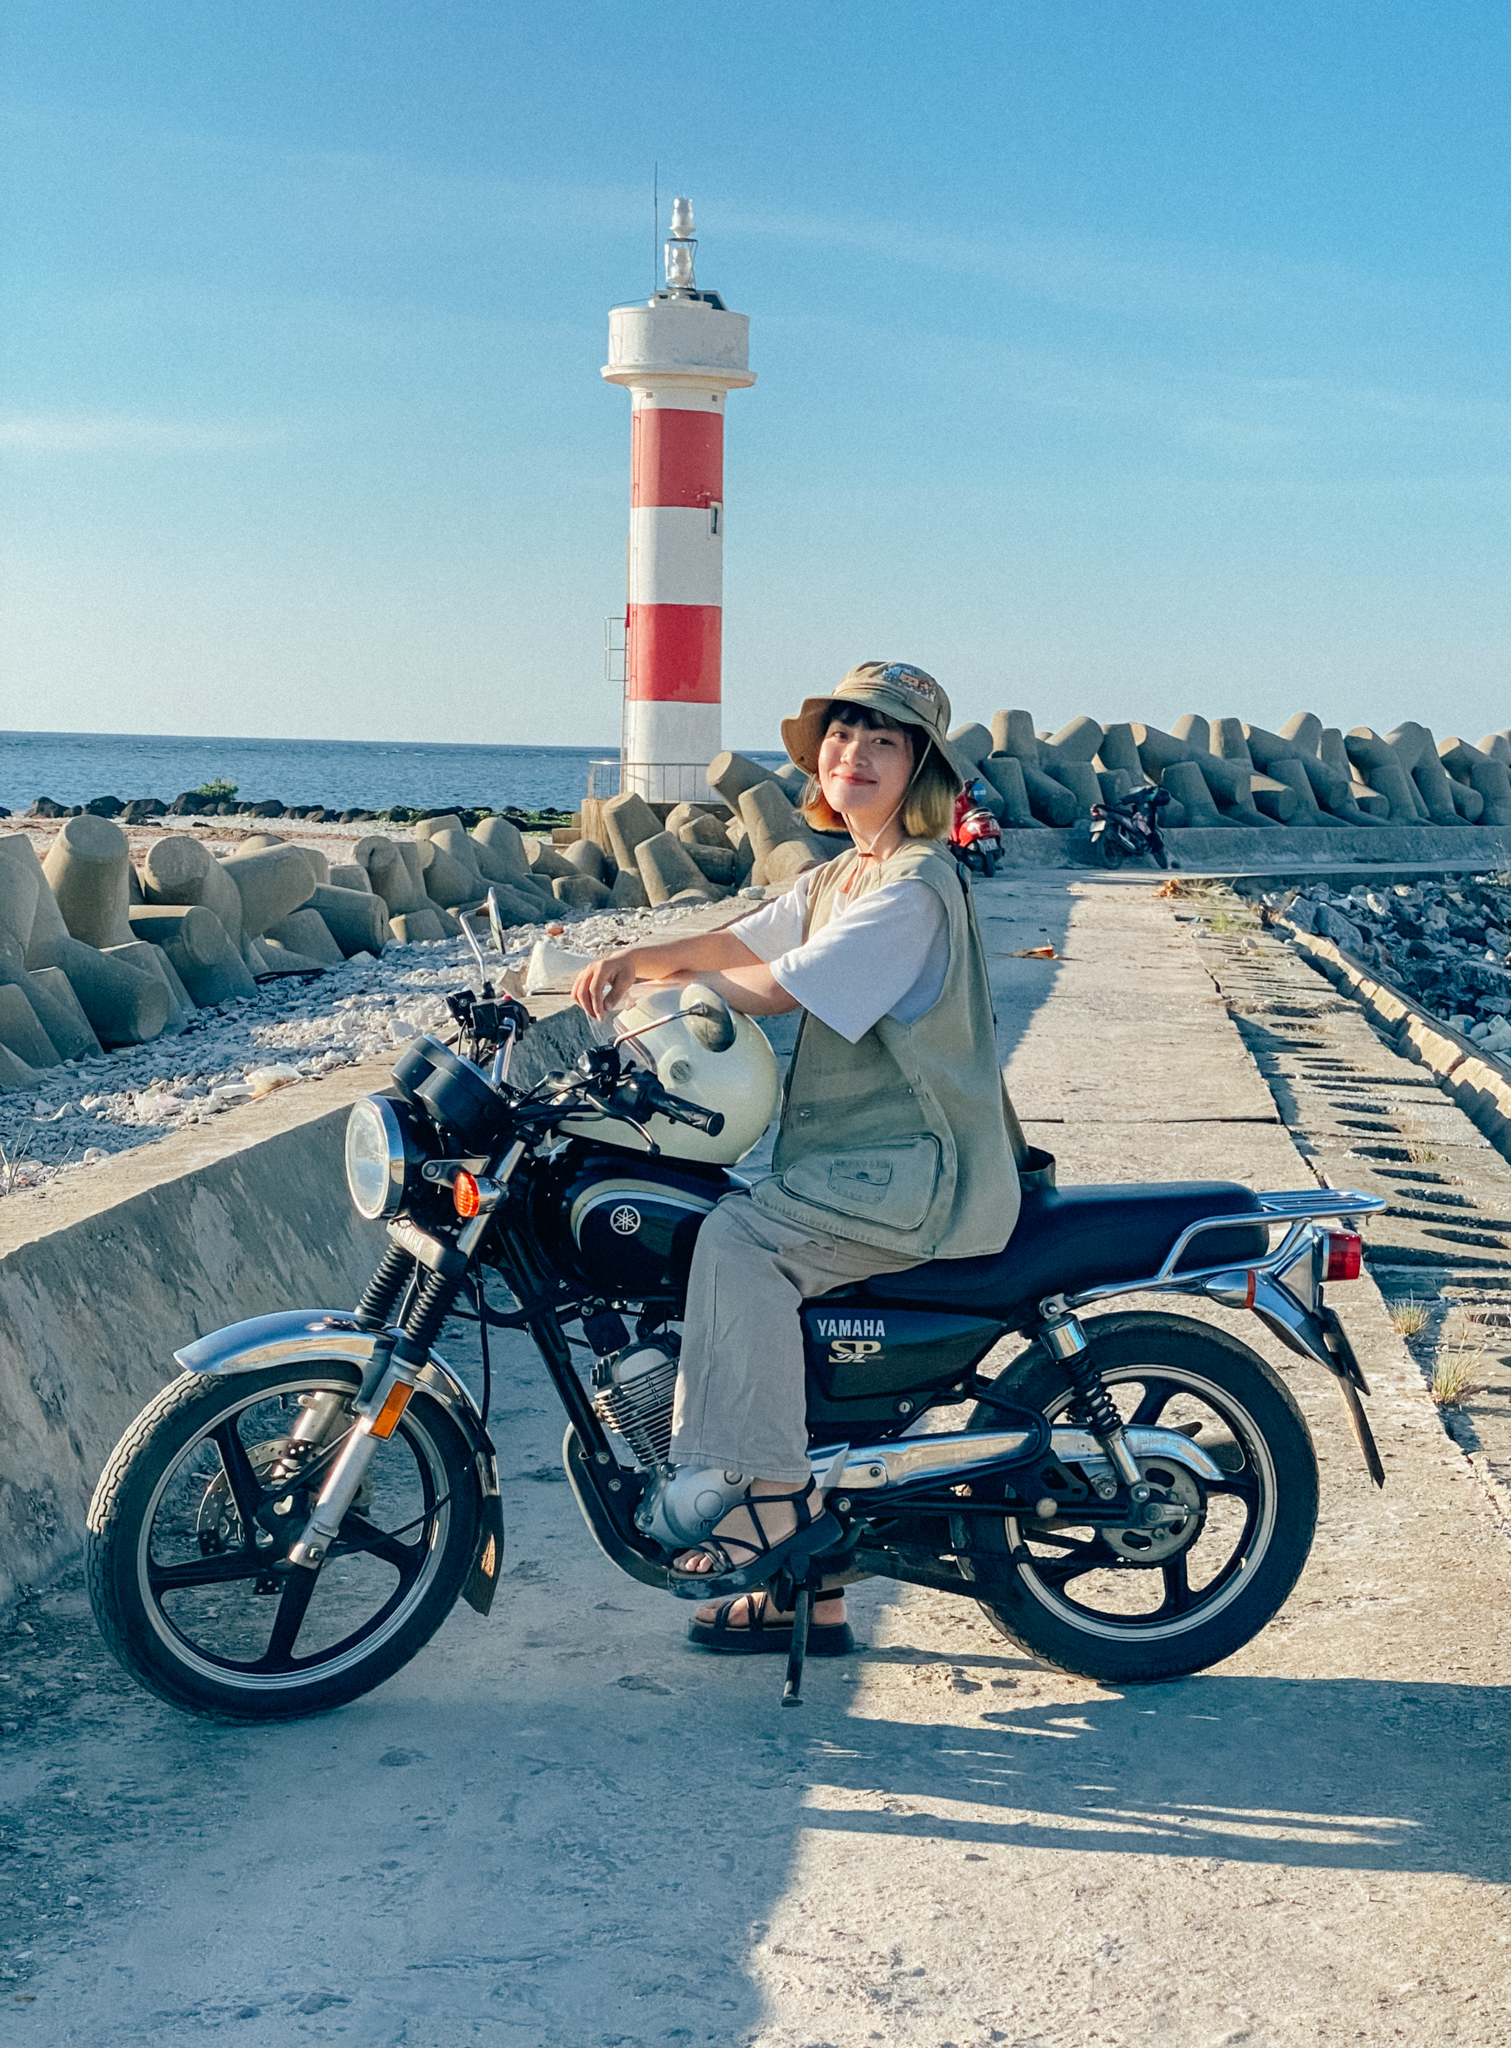 Đón tuổi 25, nàng GenZ quyết định thực hiện chuyến đi để đời: Phượt xe máy xuyên Việt một mình - Ảnh 8.